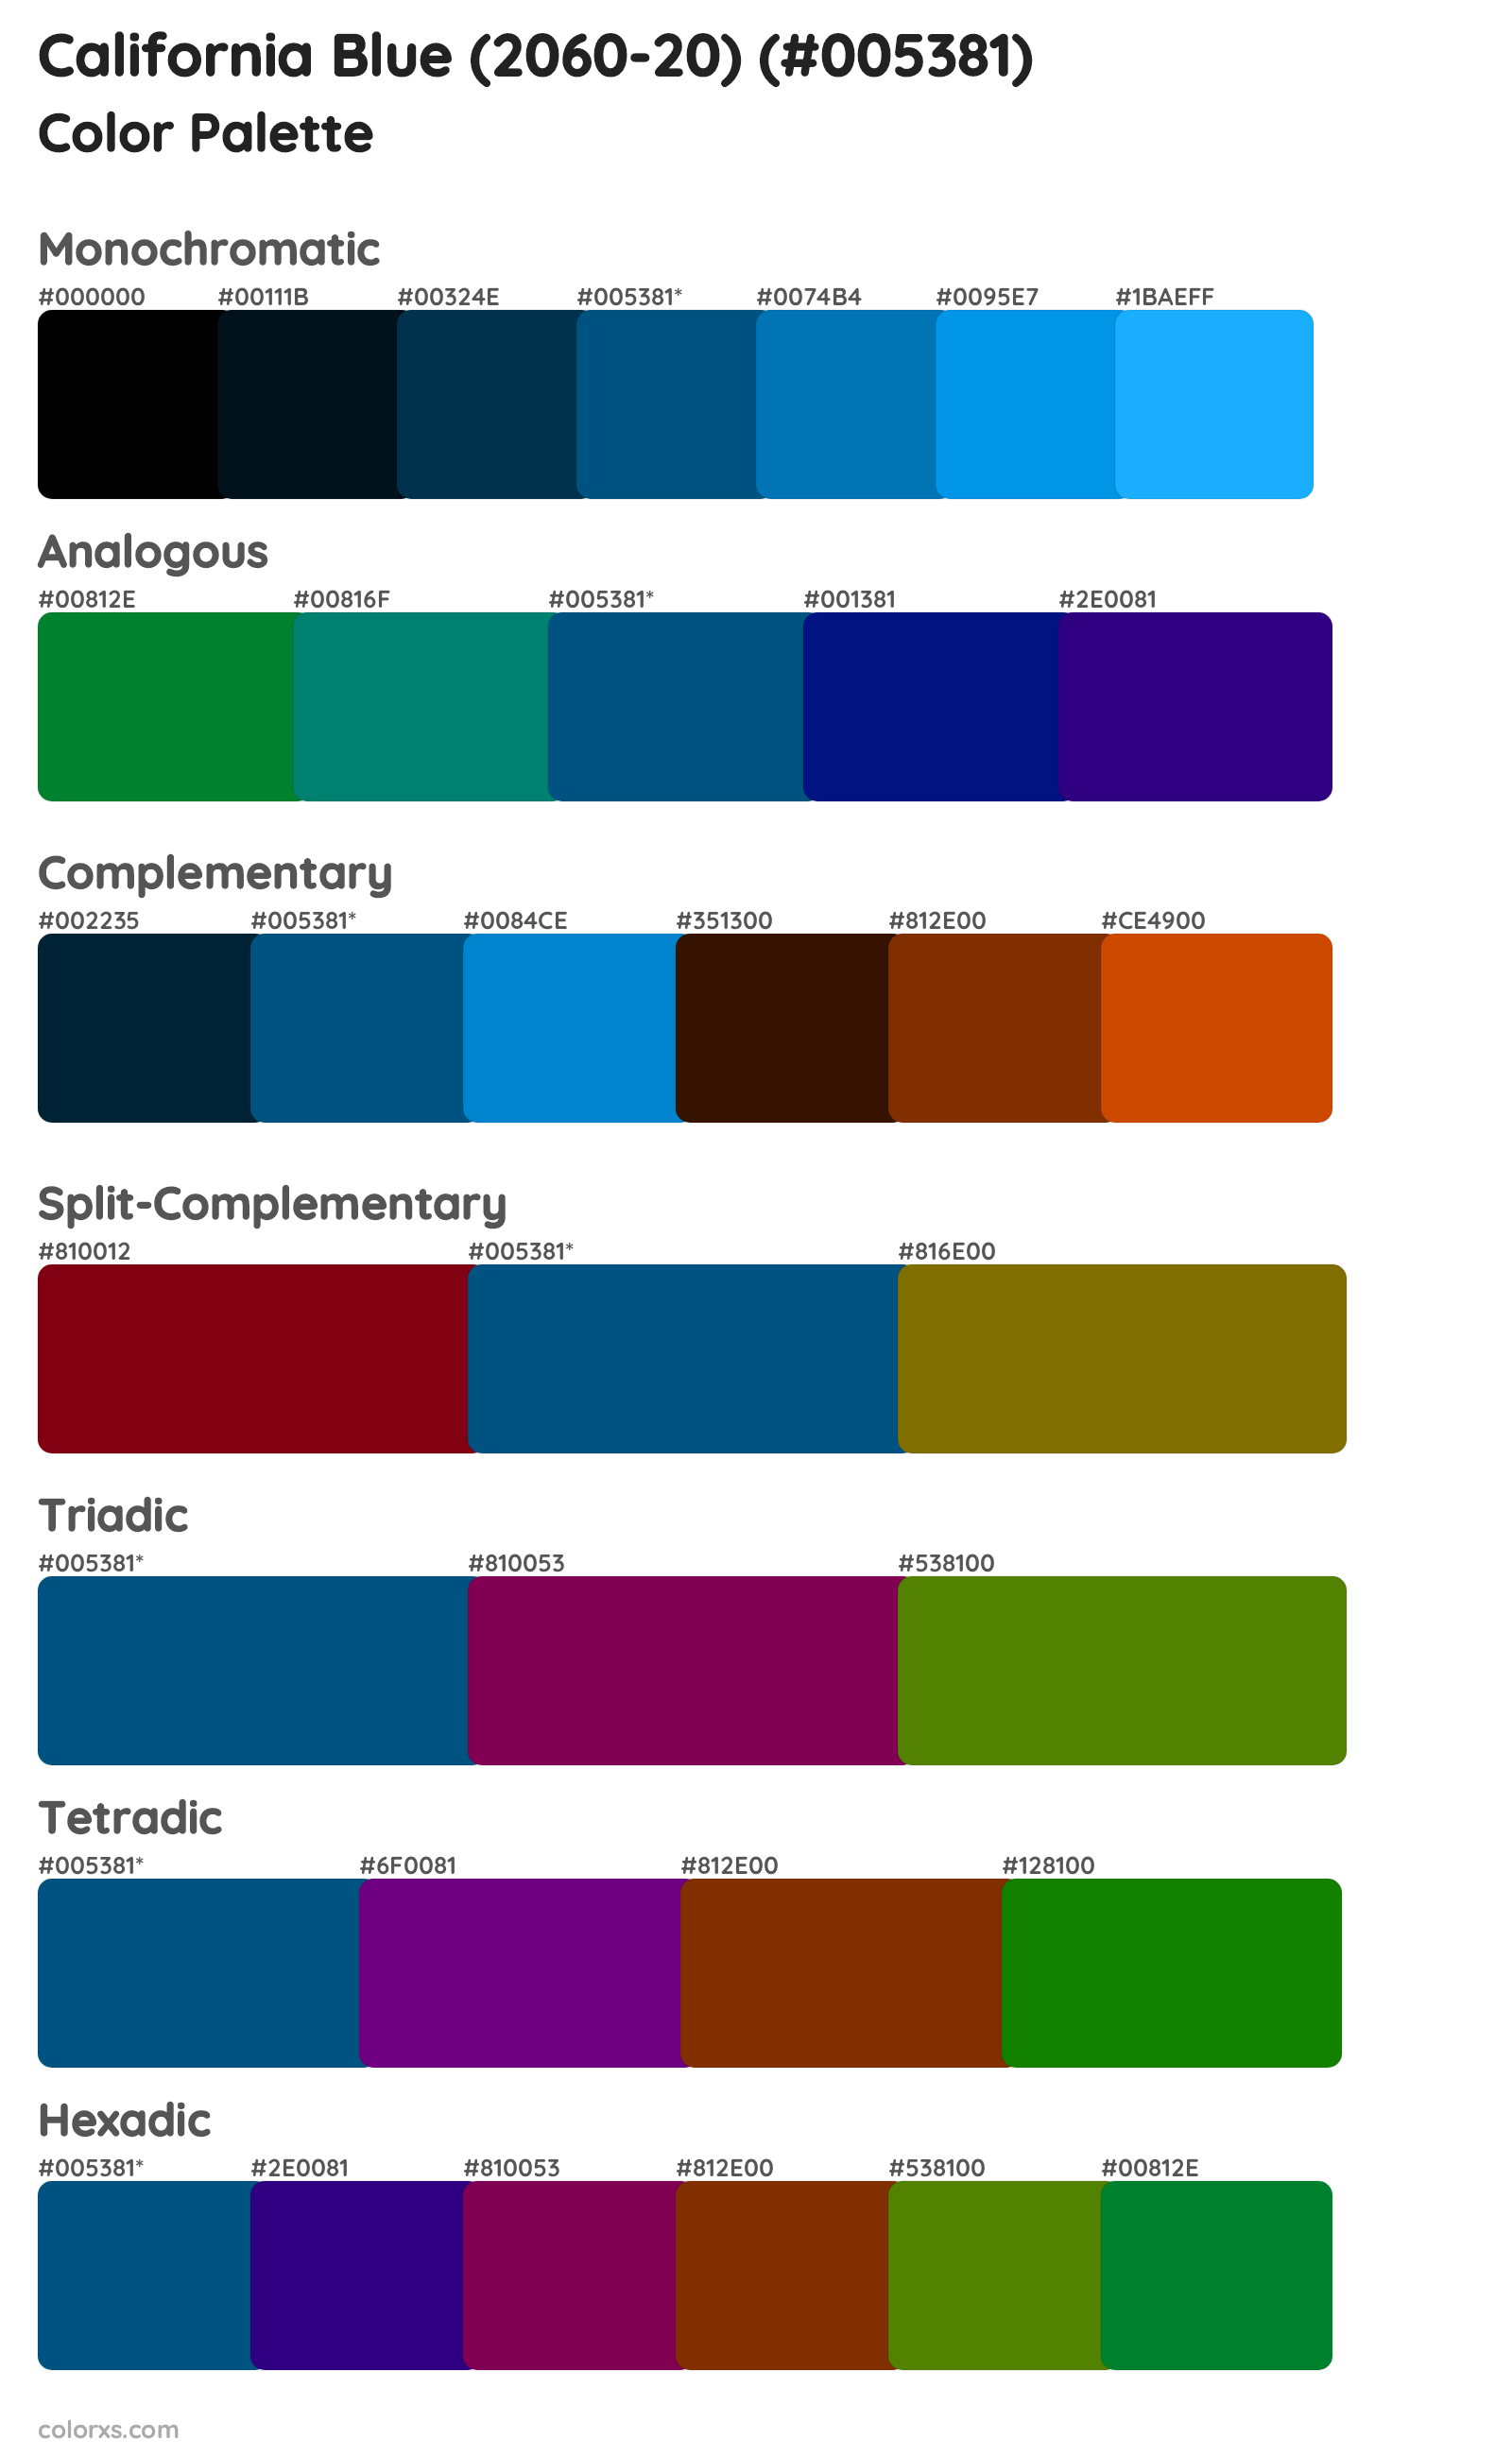 California Blue (2060-20) Color Scheme Palettes